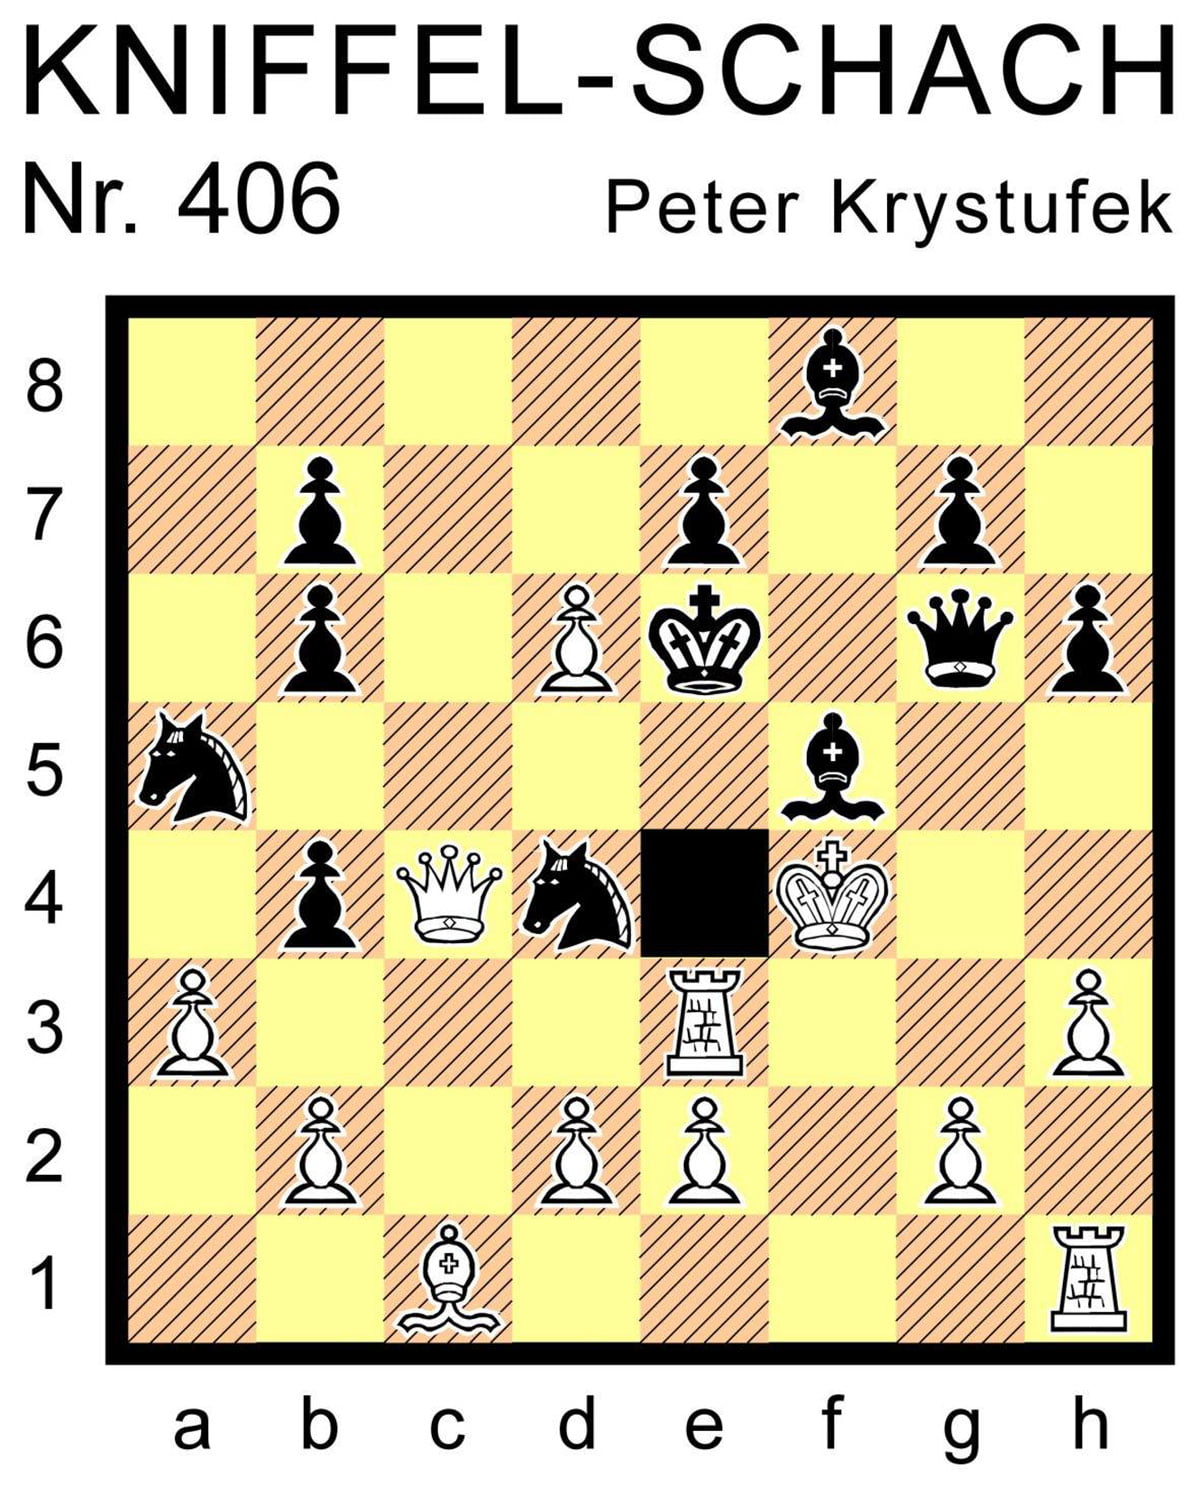 Kniffel-Schach Nr. 406